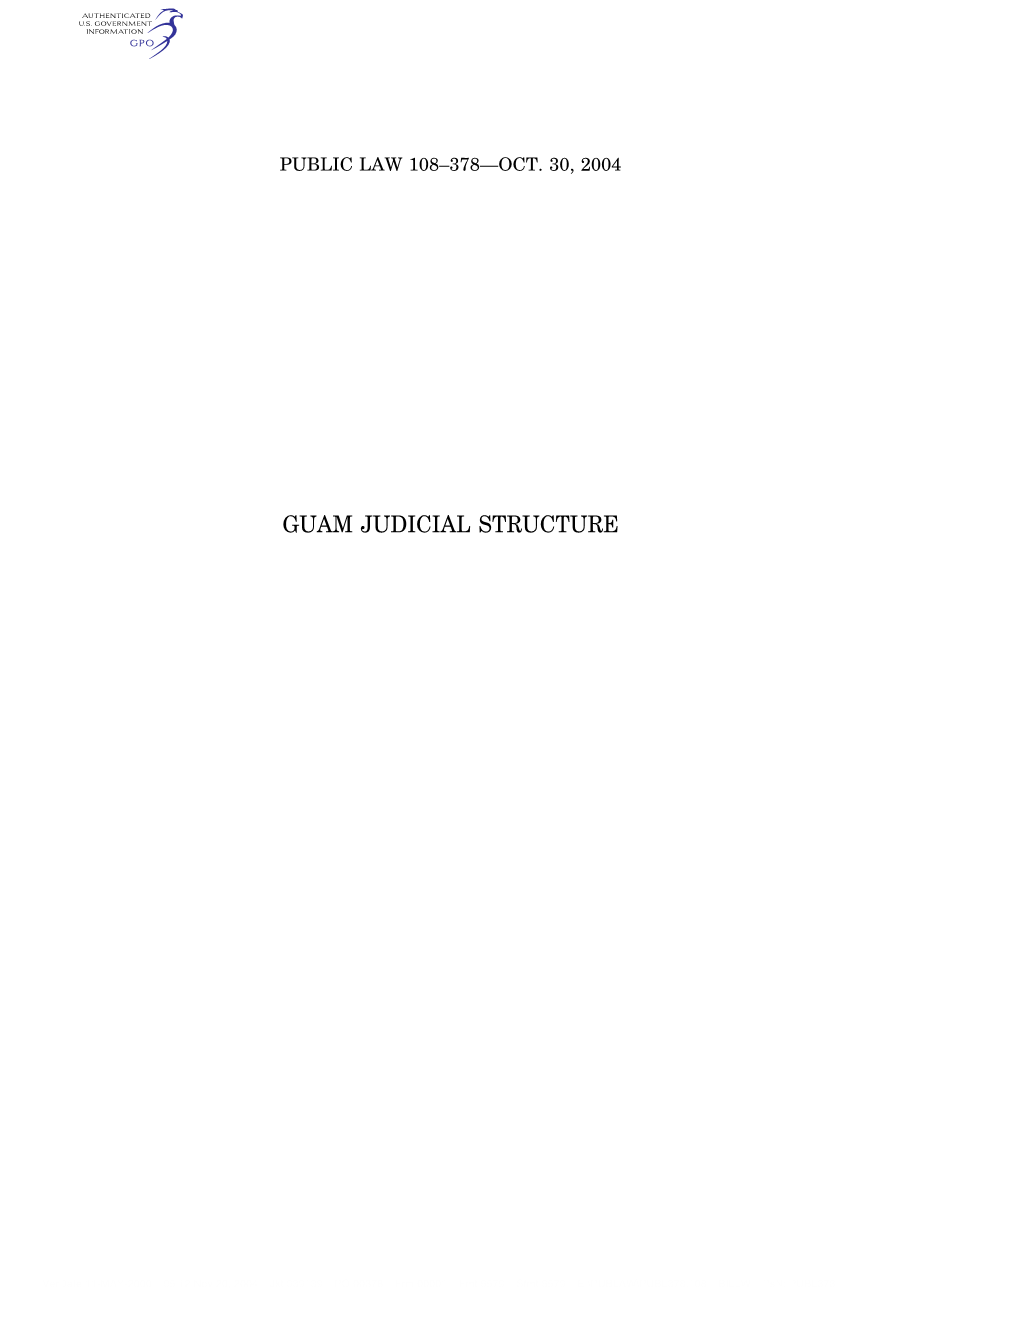 Guam Judicial Structure